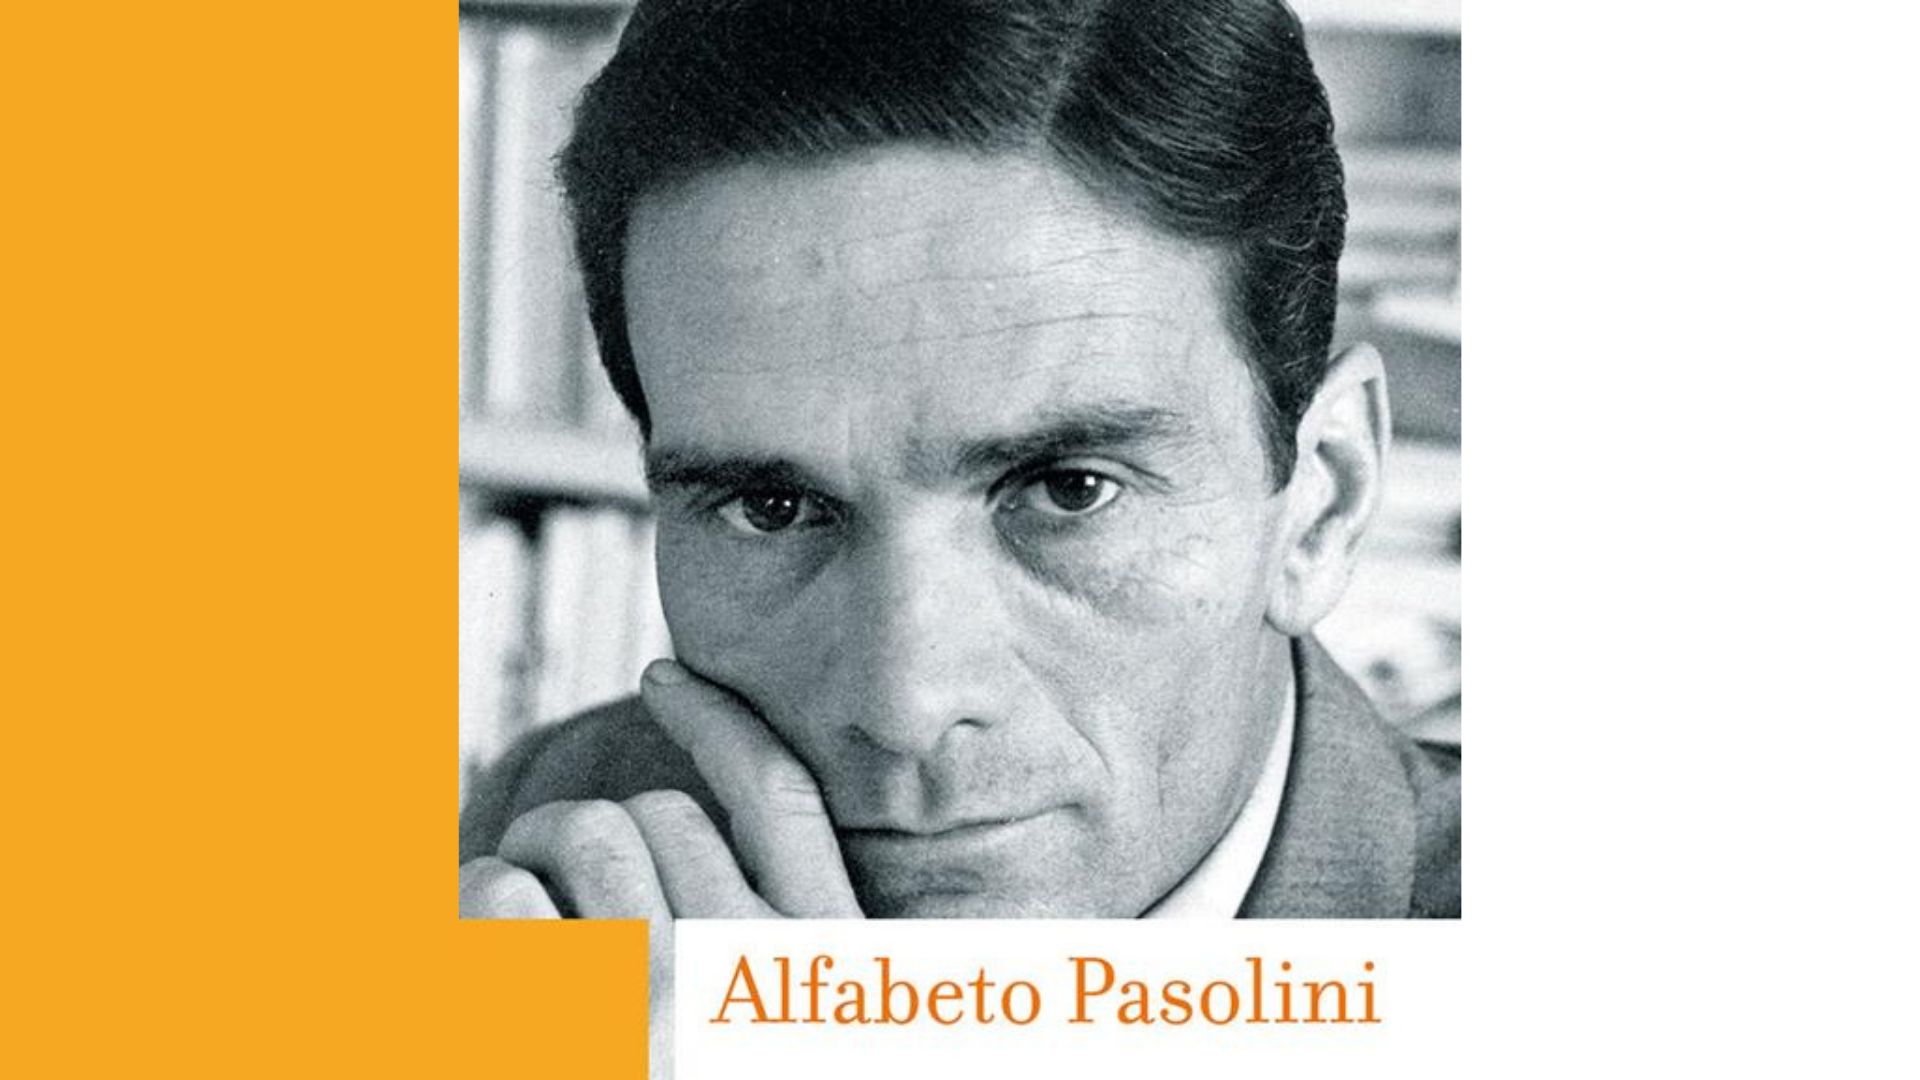 “Alfabeto Pasolini”, di Marco Antonio Bazzocchi - ItalyPost